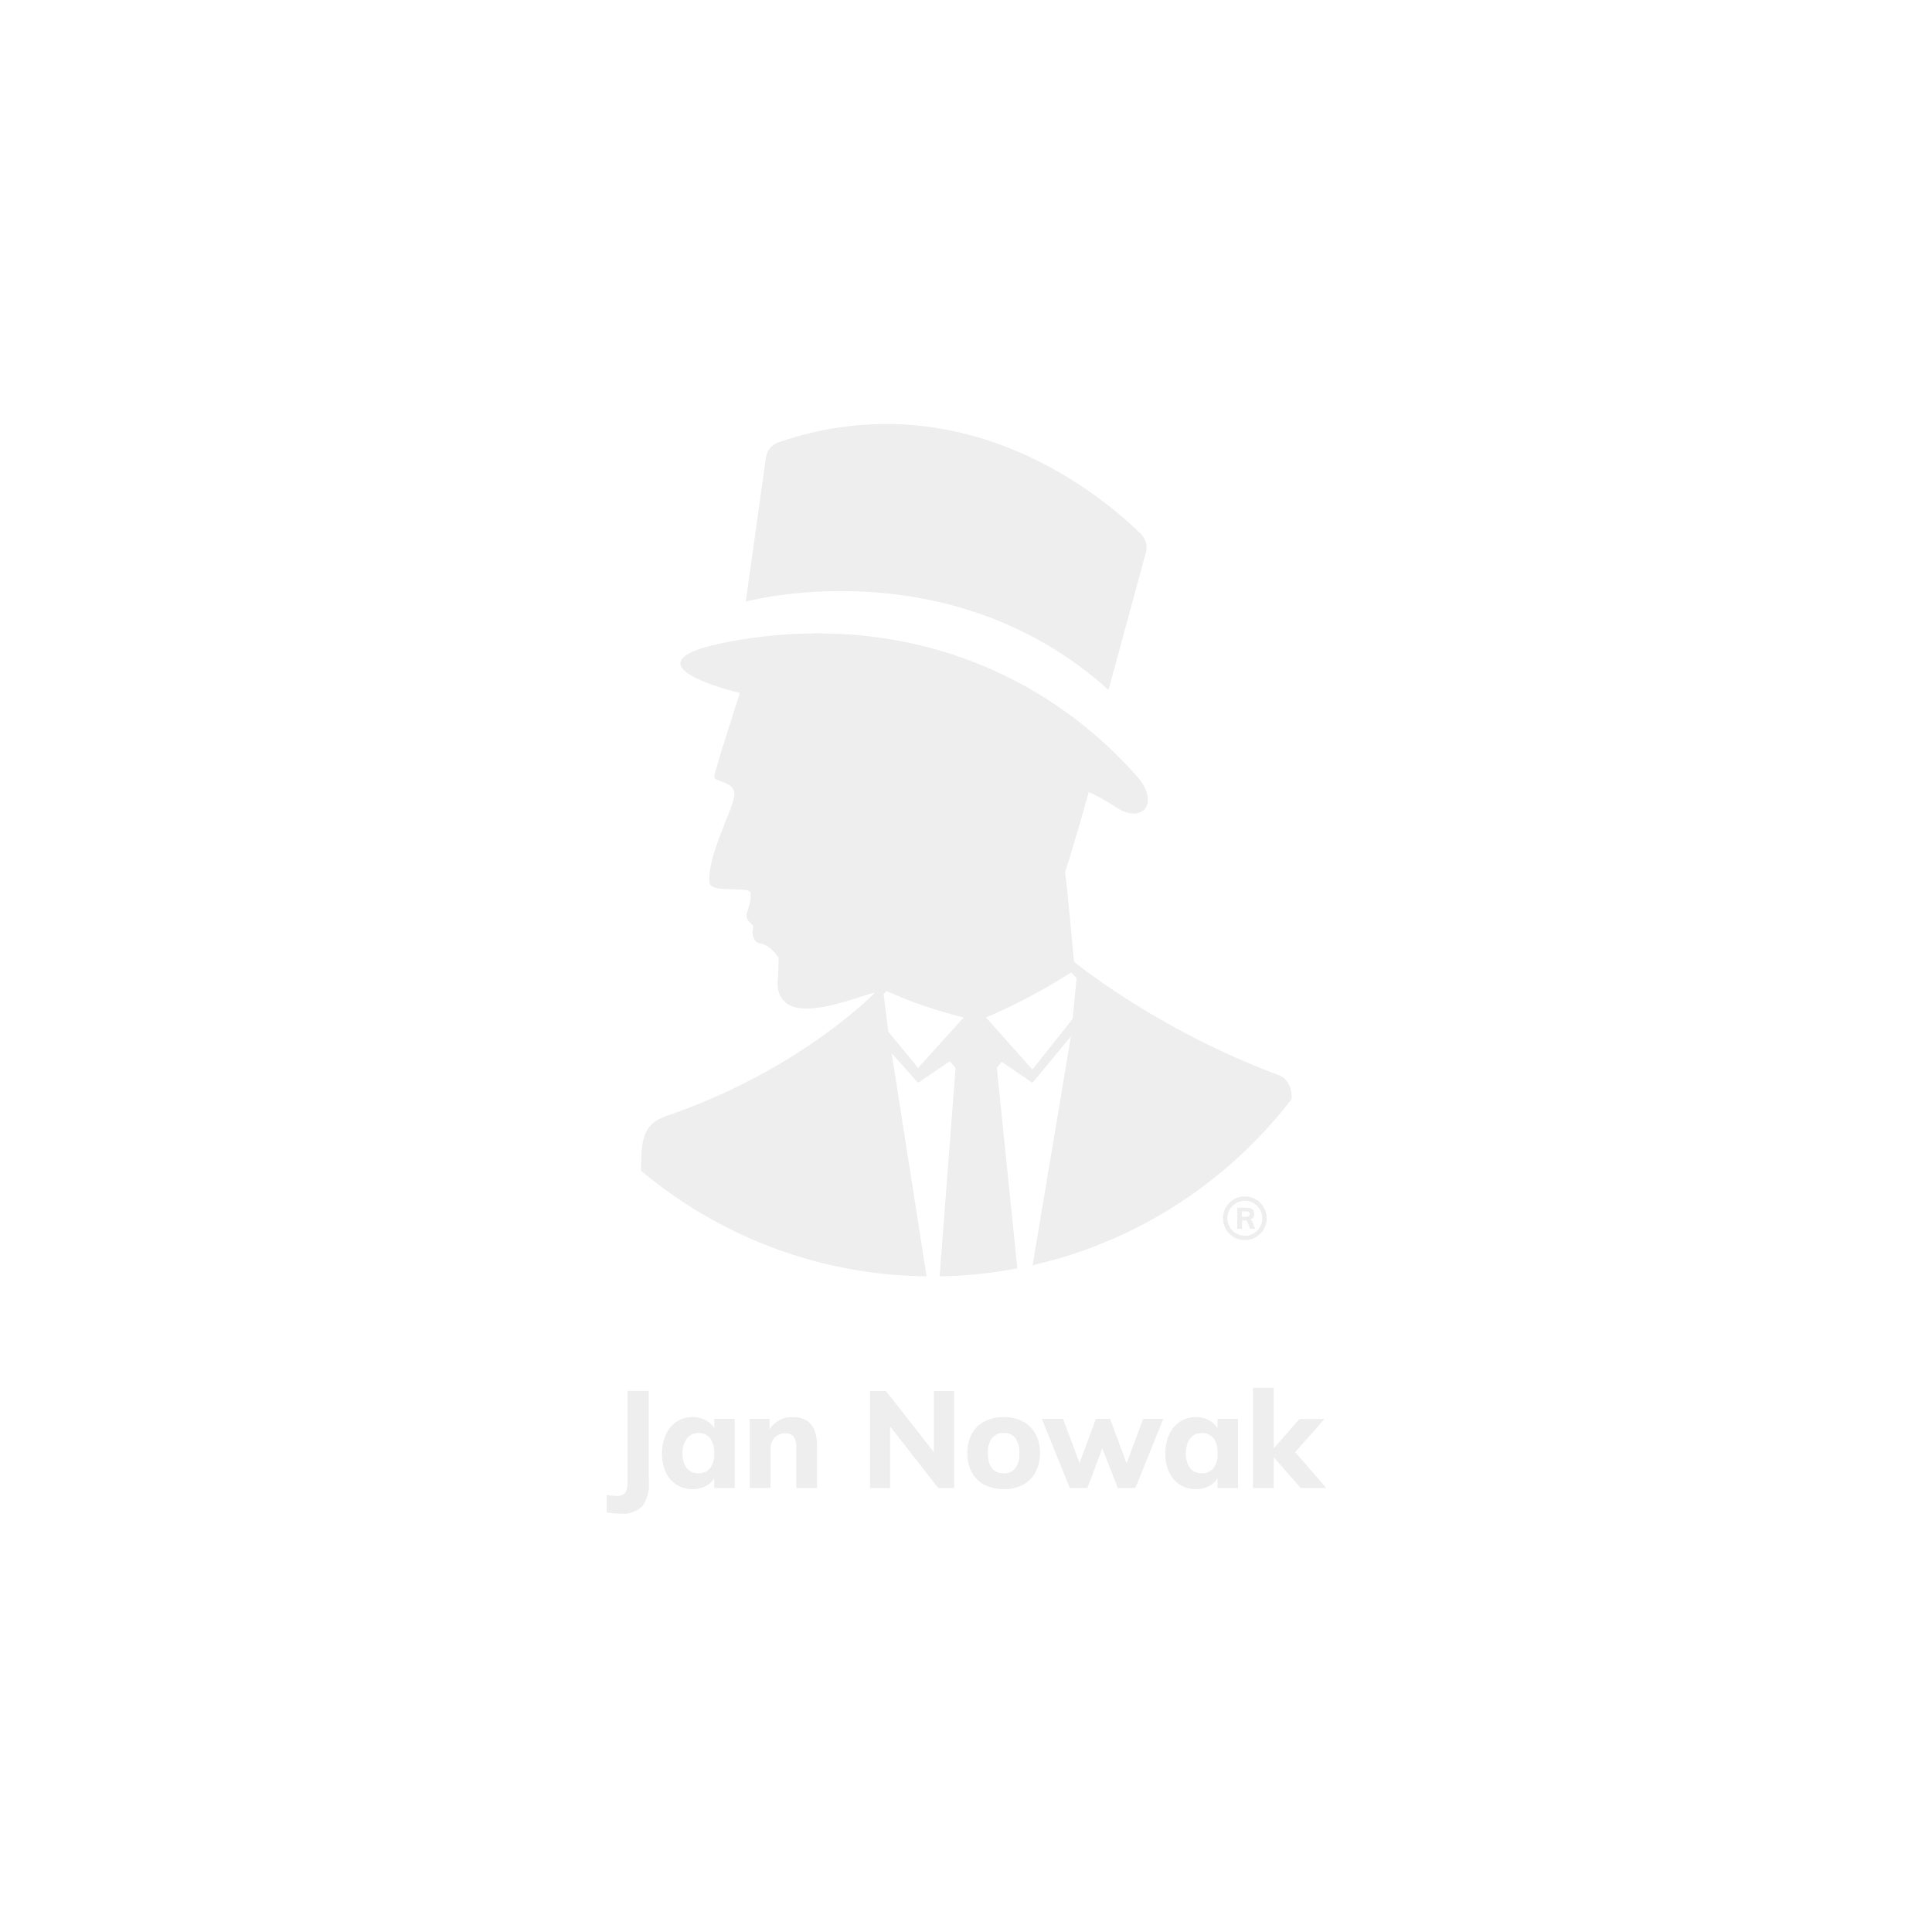 JAN NOWAK model EWA 900x380x400 biurowa nadstawka do szafy antracytowa